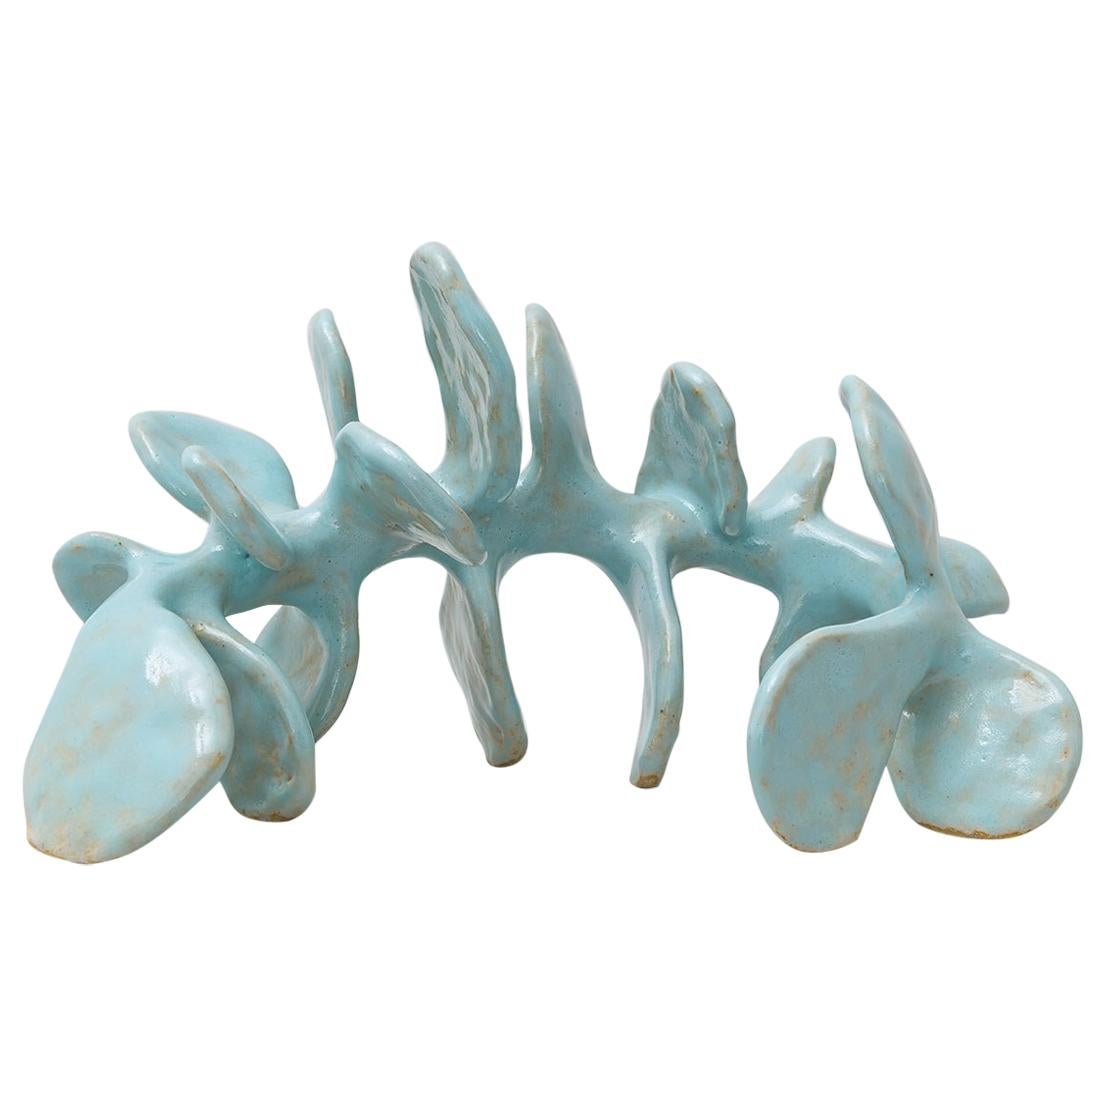 Hand Built Ceramic Sculpture, a Skeletal Vertebral Form Glazed in Turquoise